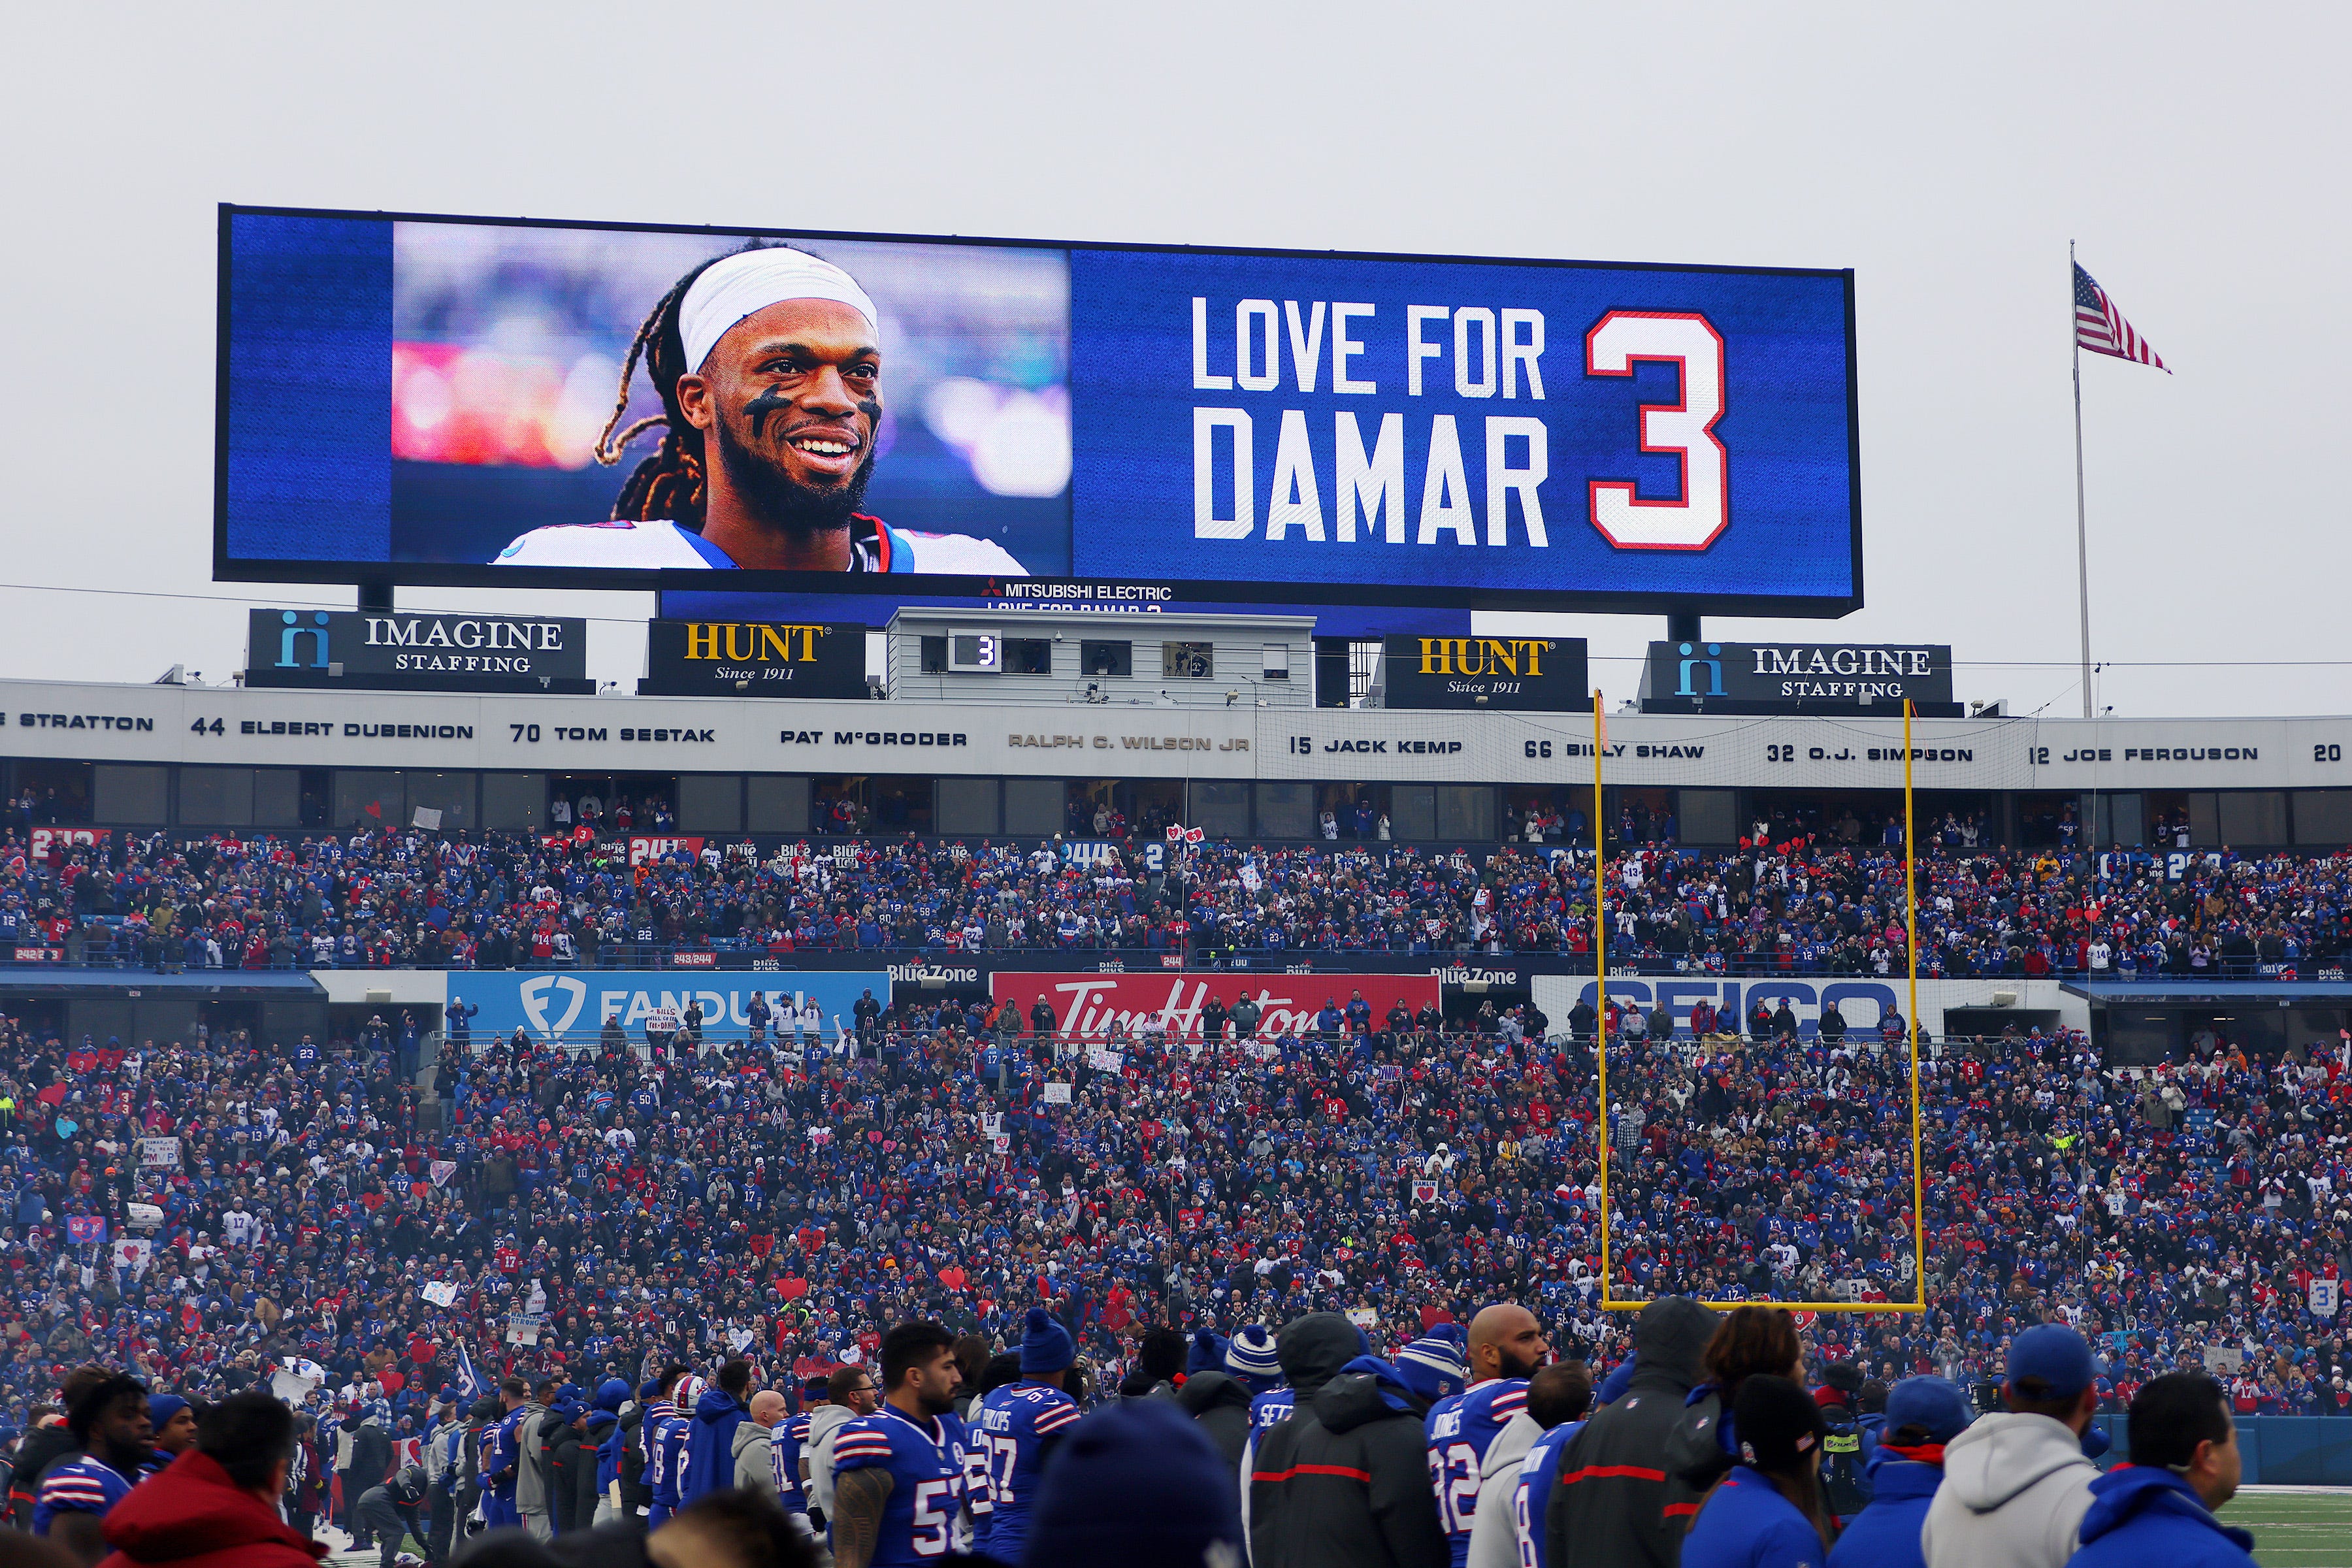 Die Anzeigetafel im Highmark Stadium mit einer Botschaft der Unterstützung für Damar Hamlin während des Spiels zwischen den New England Patriots und den Buffalo Bills am 8. Januar 2023.